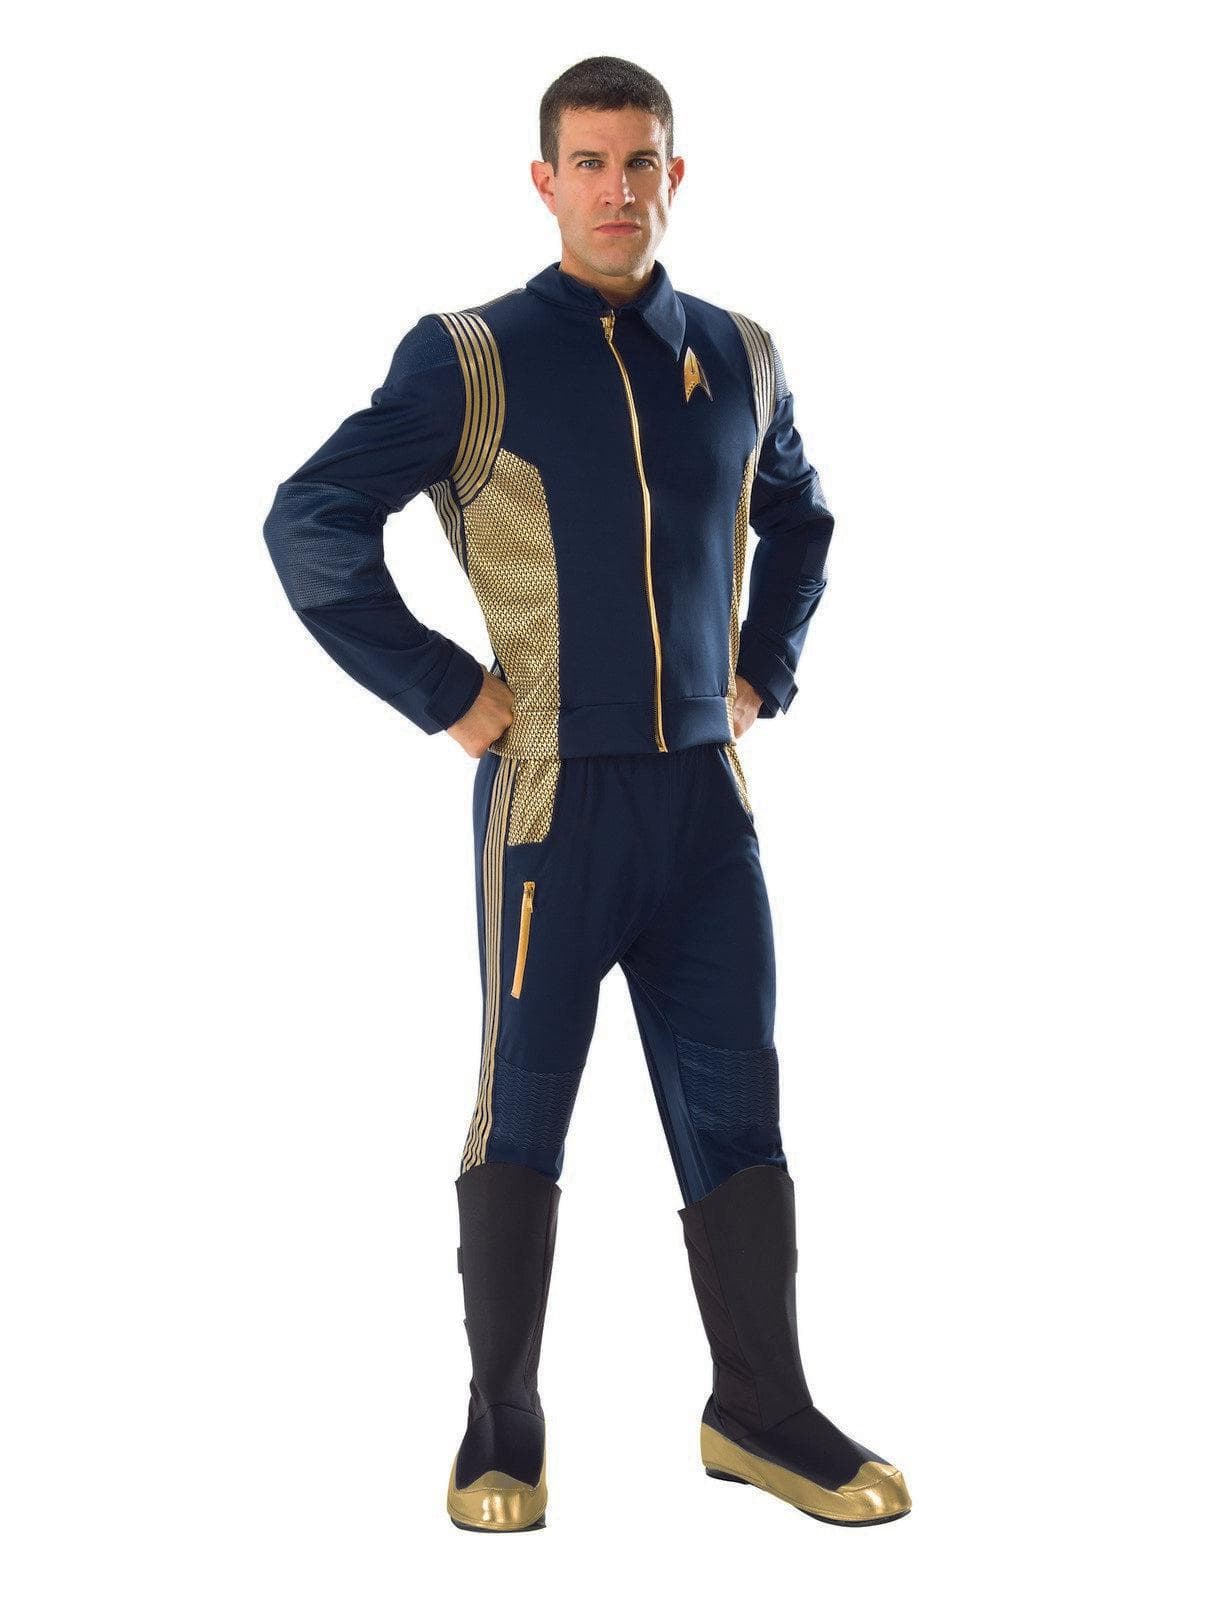 Adult Star Trek Costume - costumes.com